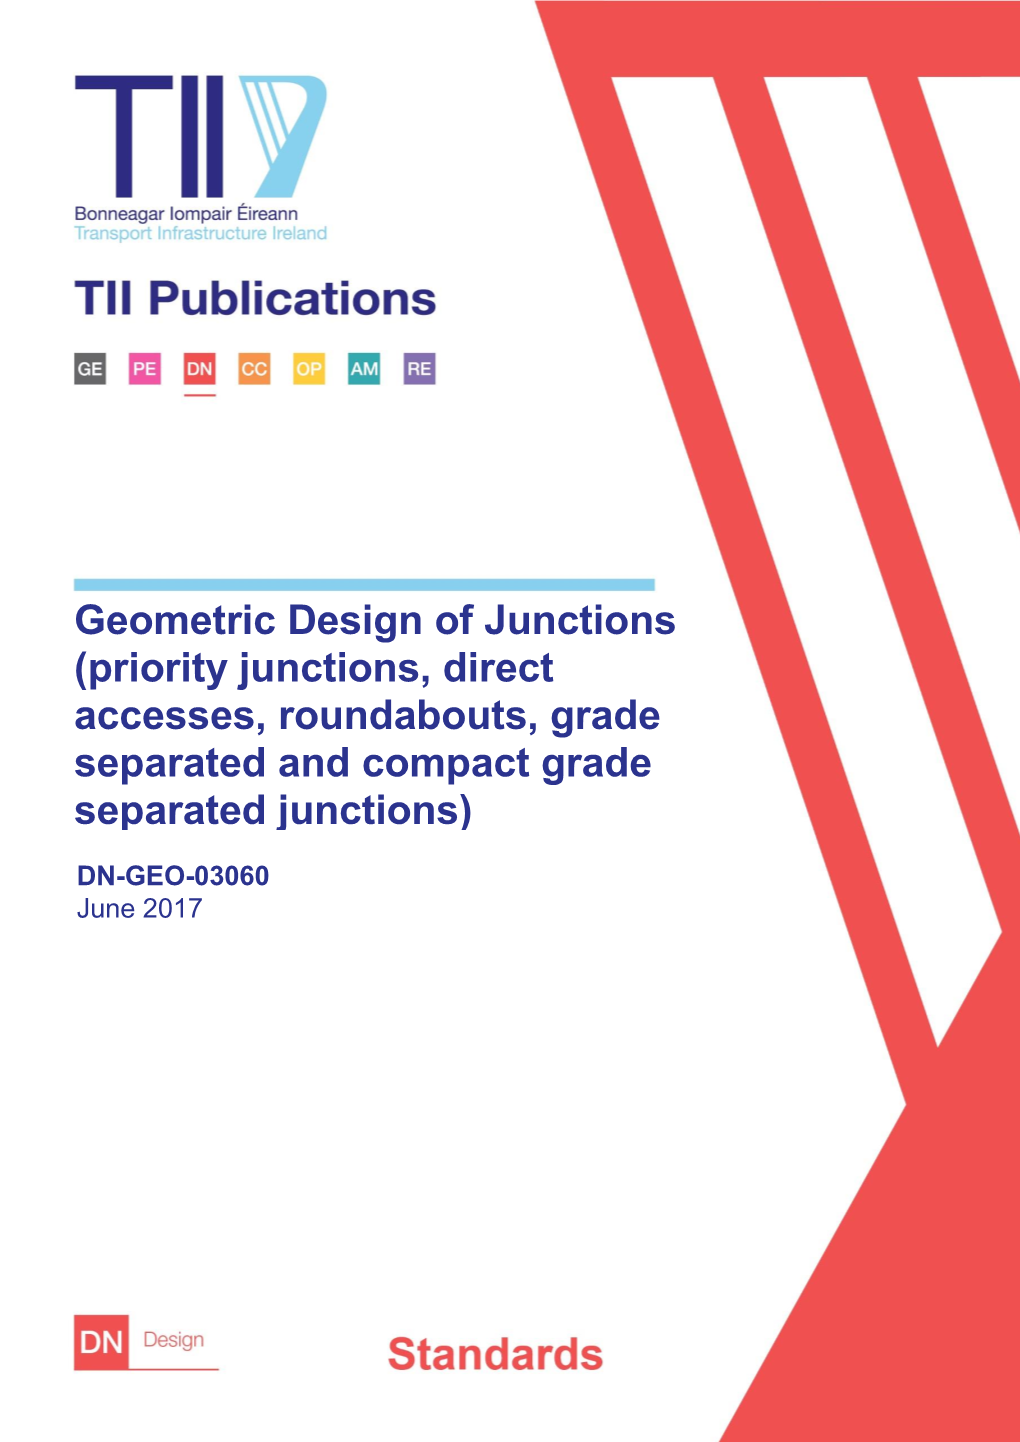 DN-GEO-03060 June 2017 TRANSPORT INFRASTRUCTURE IRELAND (TII) PUBLICATIONS